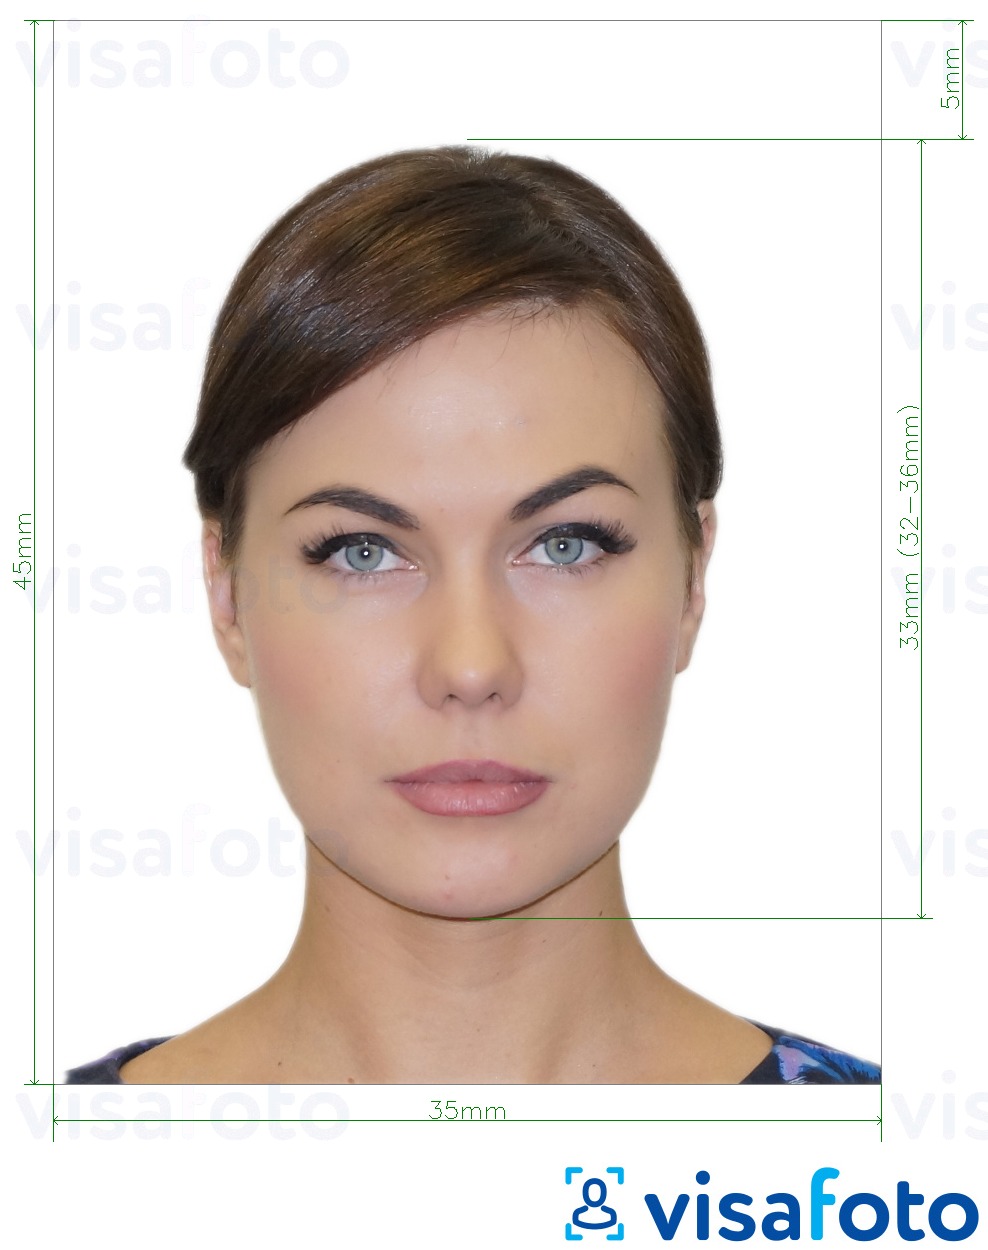 Ejemplo de foto para Fan ID de Rusia  píxeles con la especificación del tamaño exacto